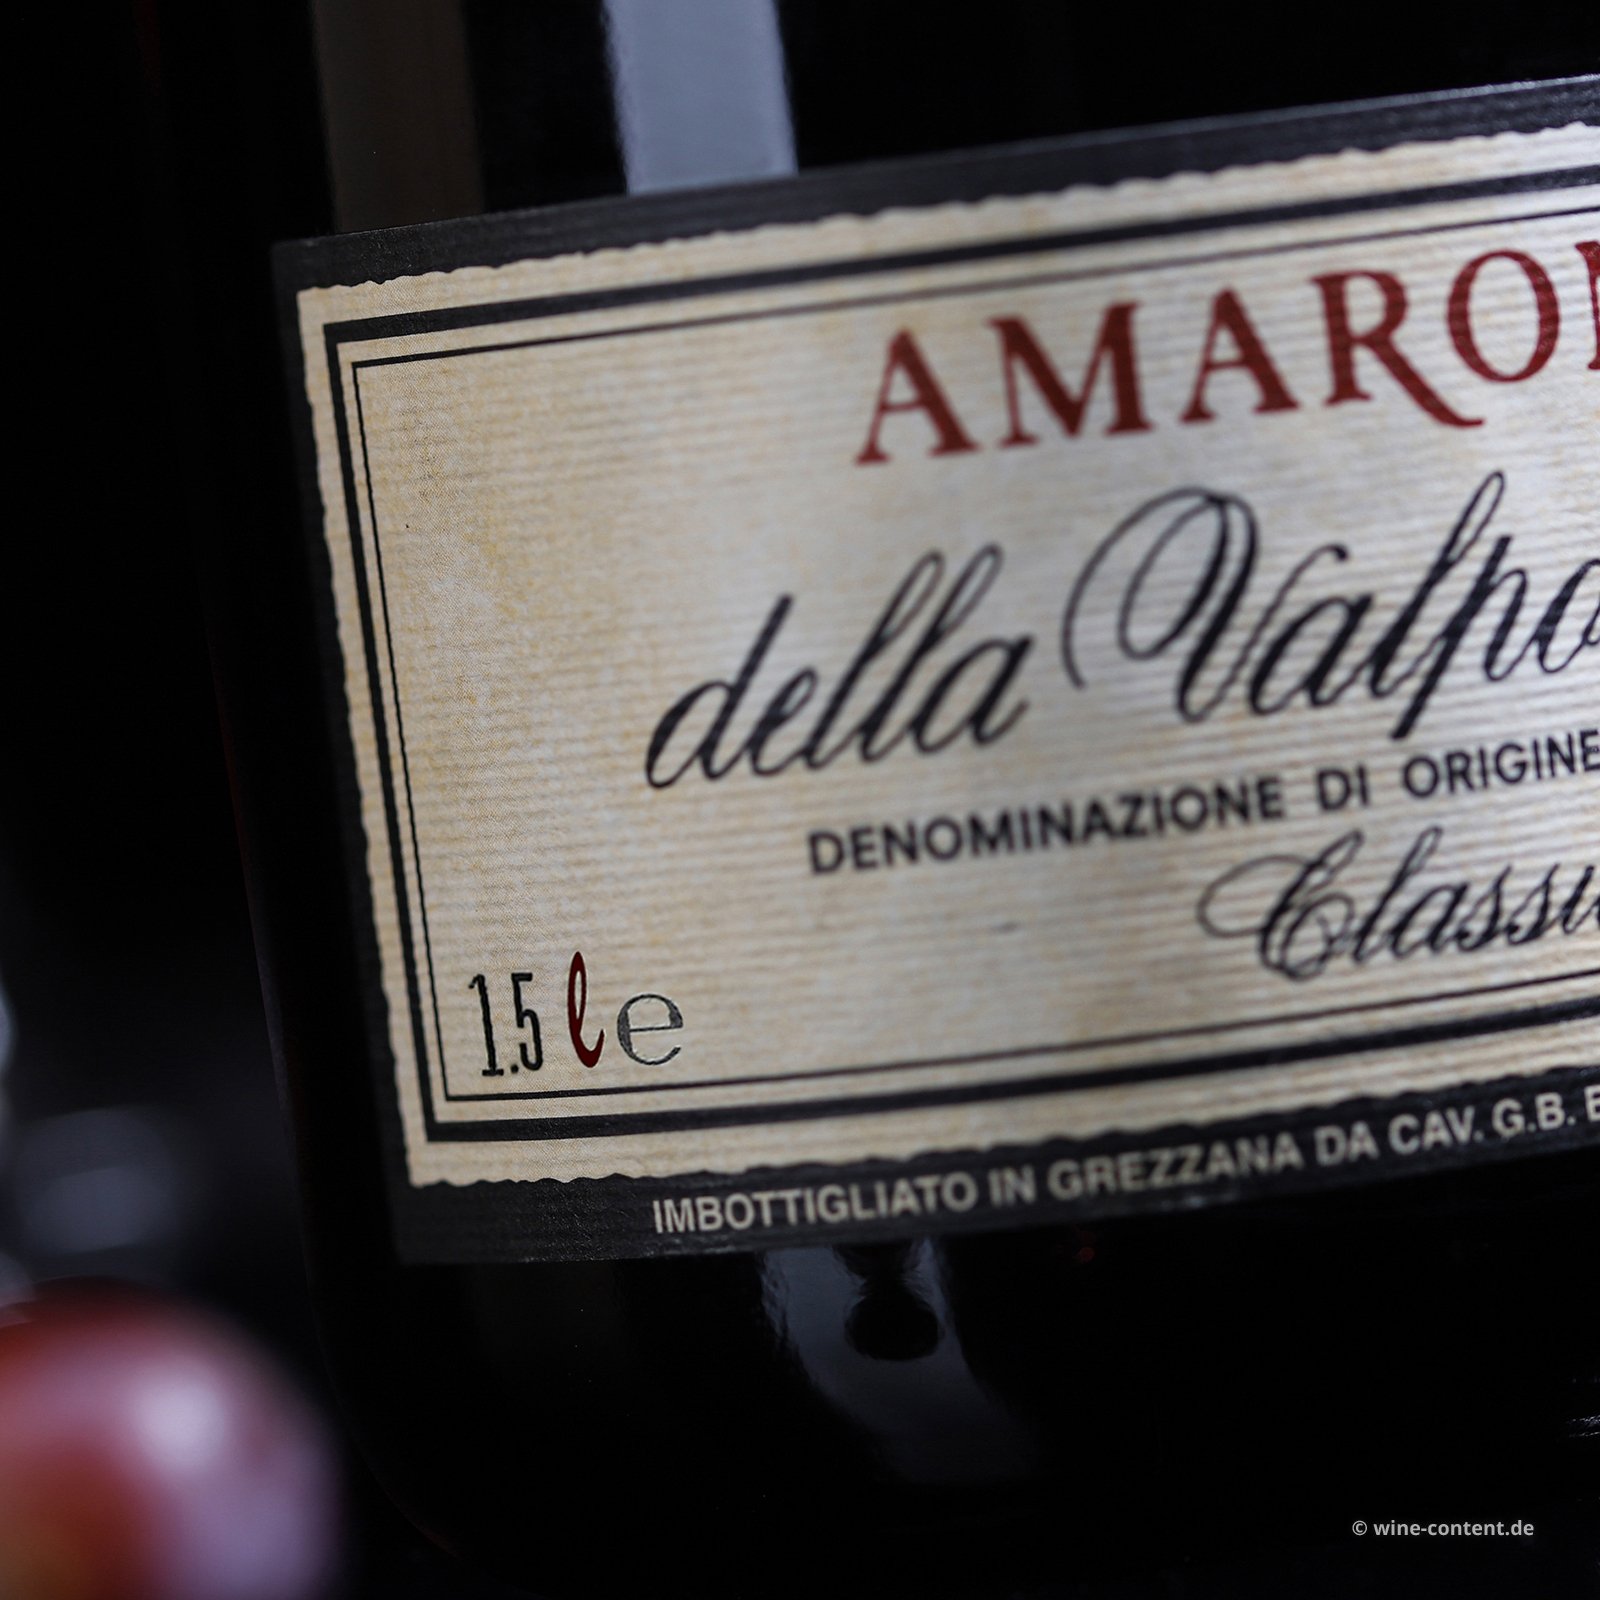 Amarone Classico 2013 Magnum